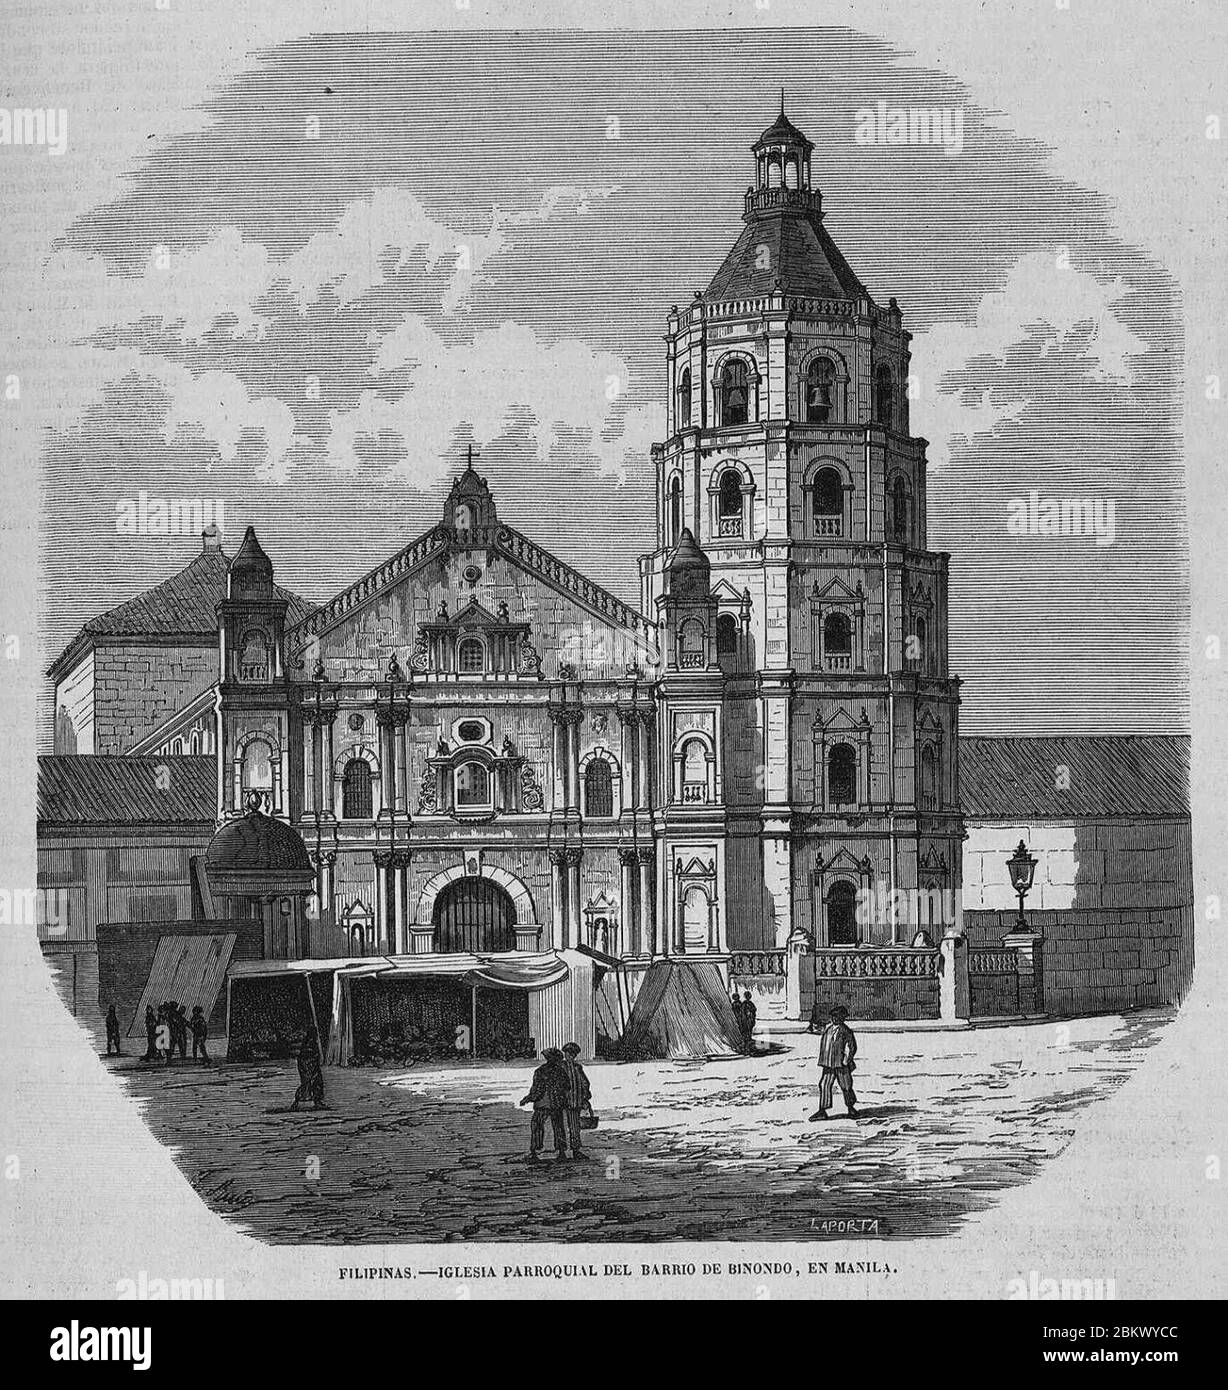 Iglesia parroquial del barrio de Binondo, en Manila, de Ruiz. Foto Stock